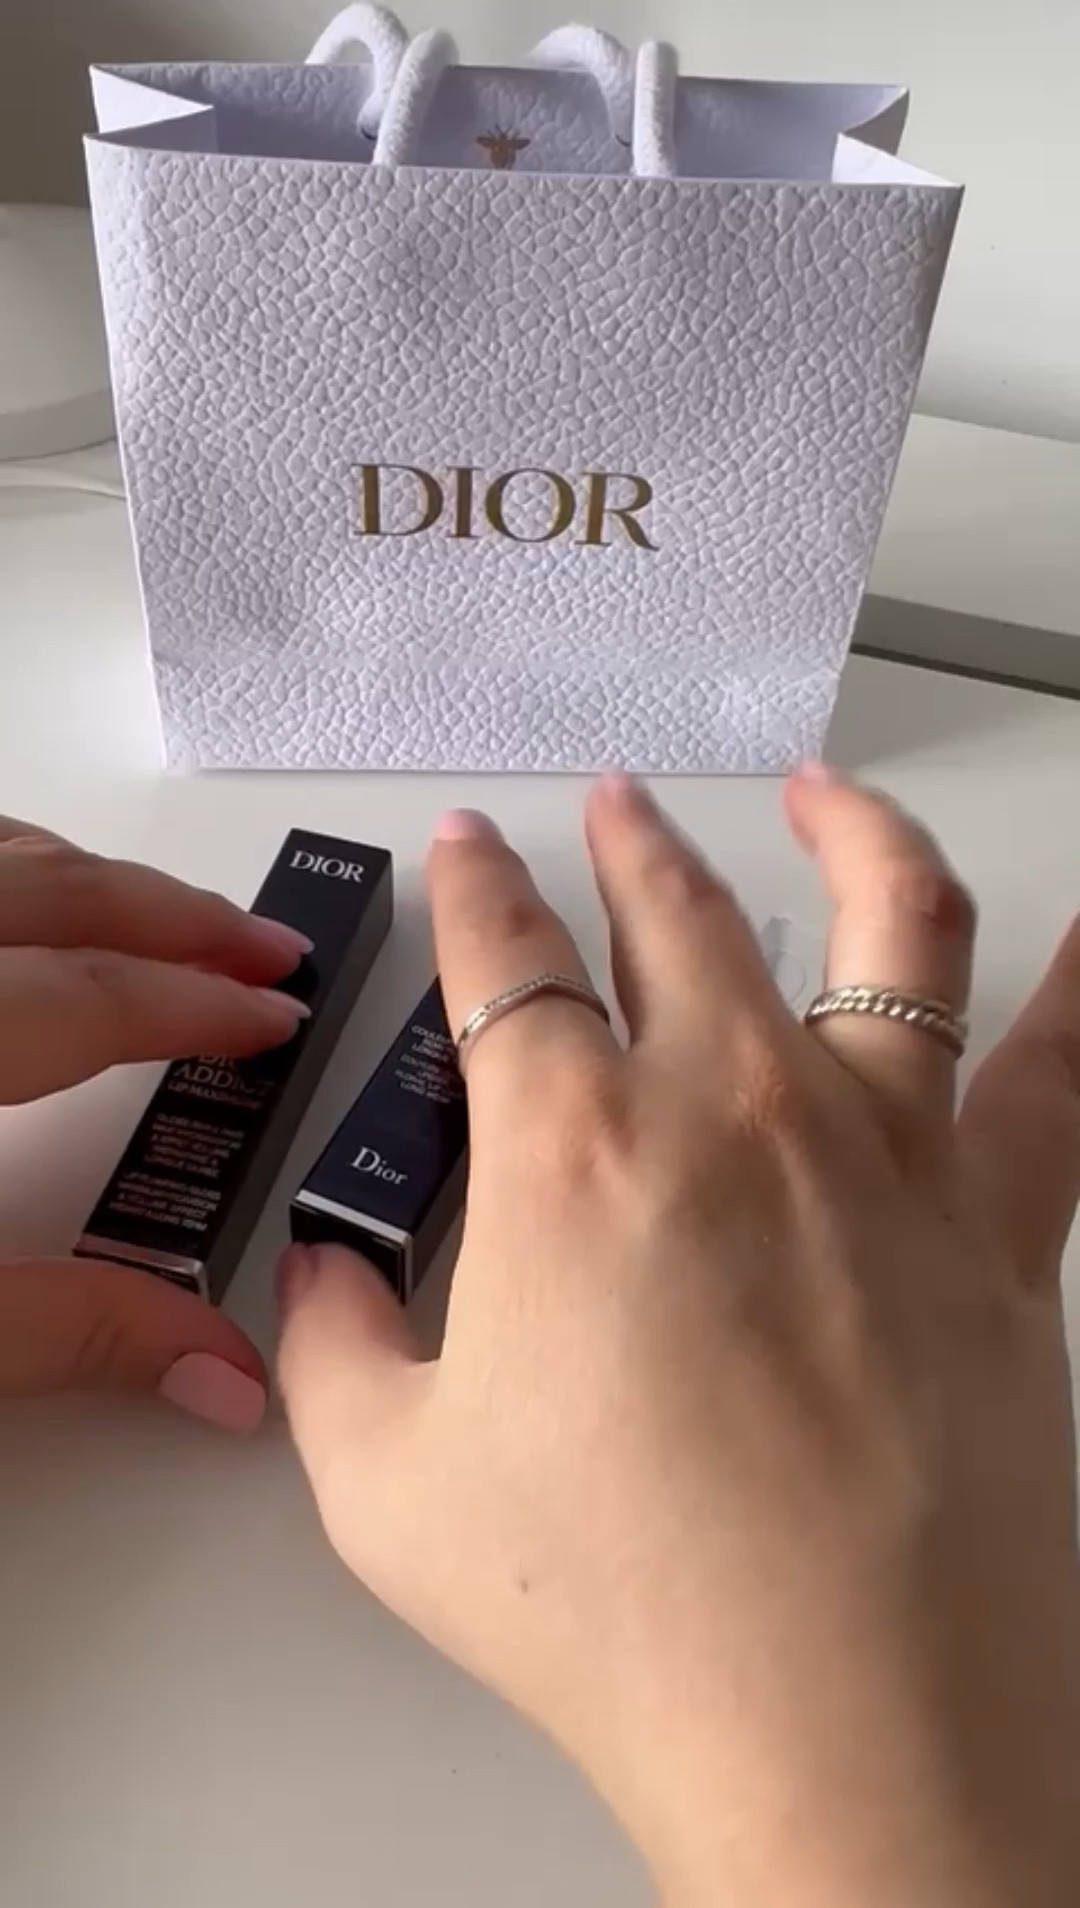 Box Dior/counter Dior lipstick gift box paper bag perfume paper